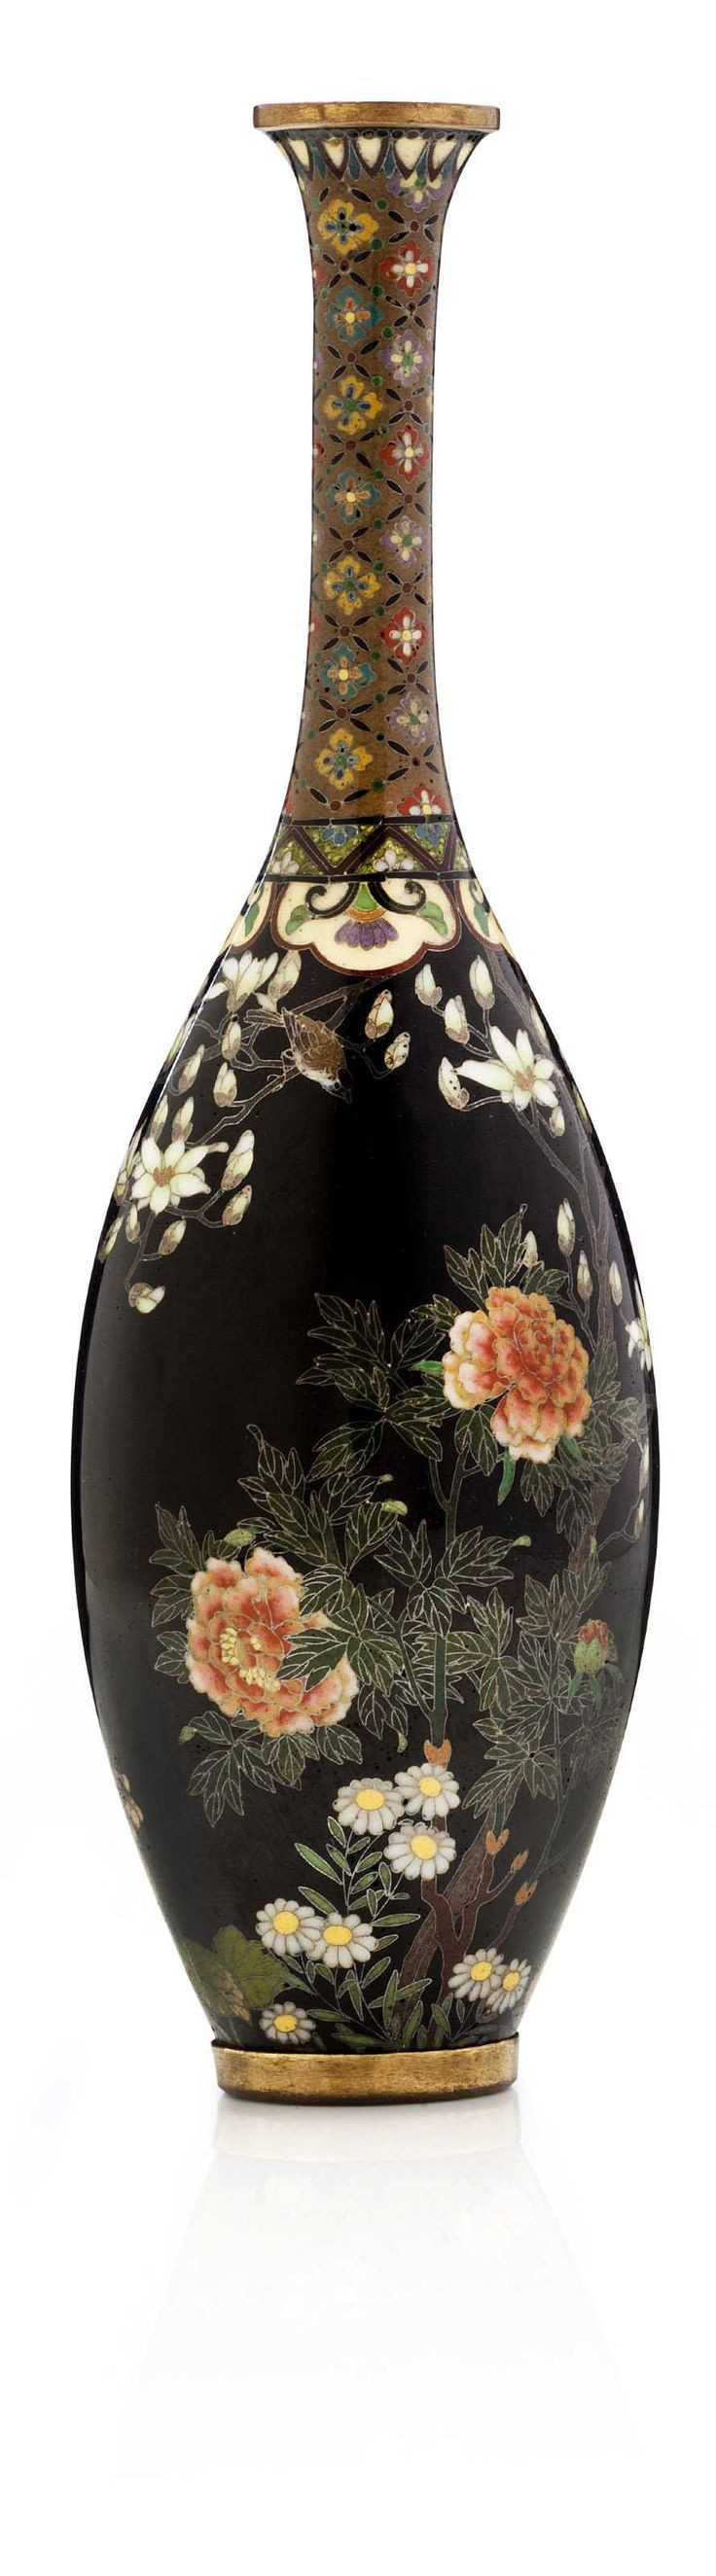 26 Popular Beaker Flower Vase 2024 free download beaker flower vase of 237 best cloisonne images on pinterest enamels porcelain for a cloisonna enamel vase